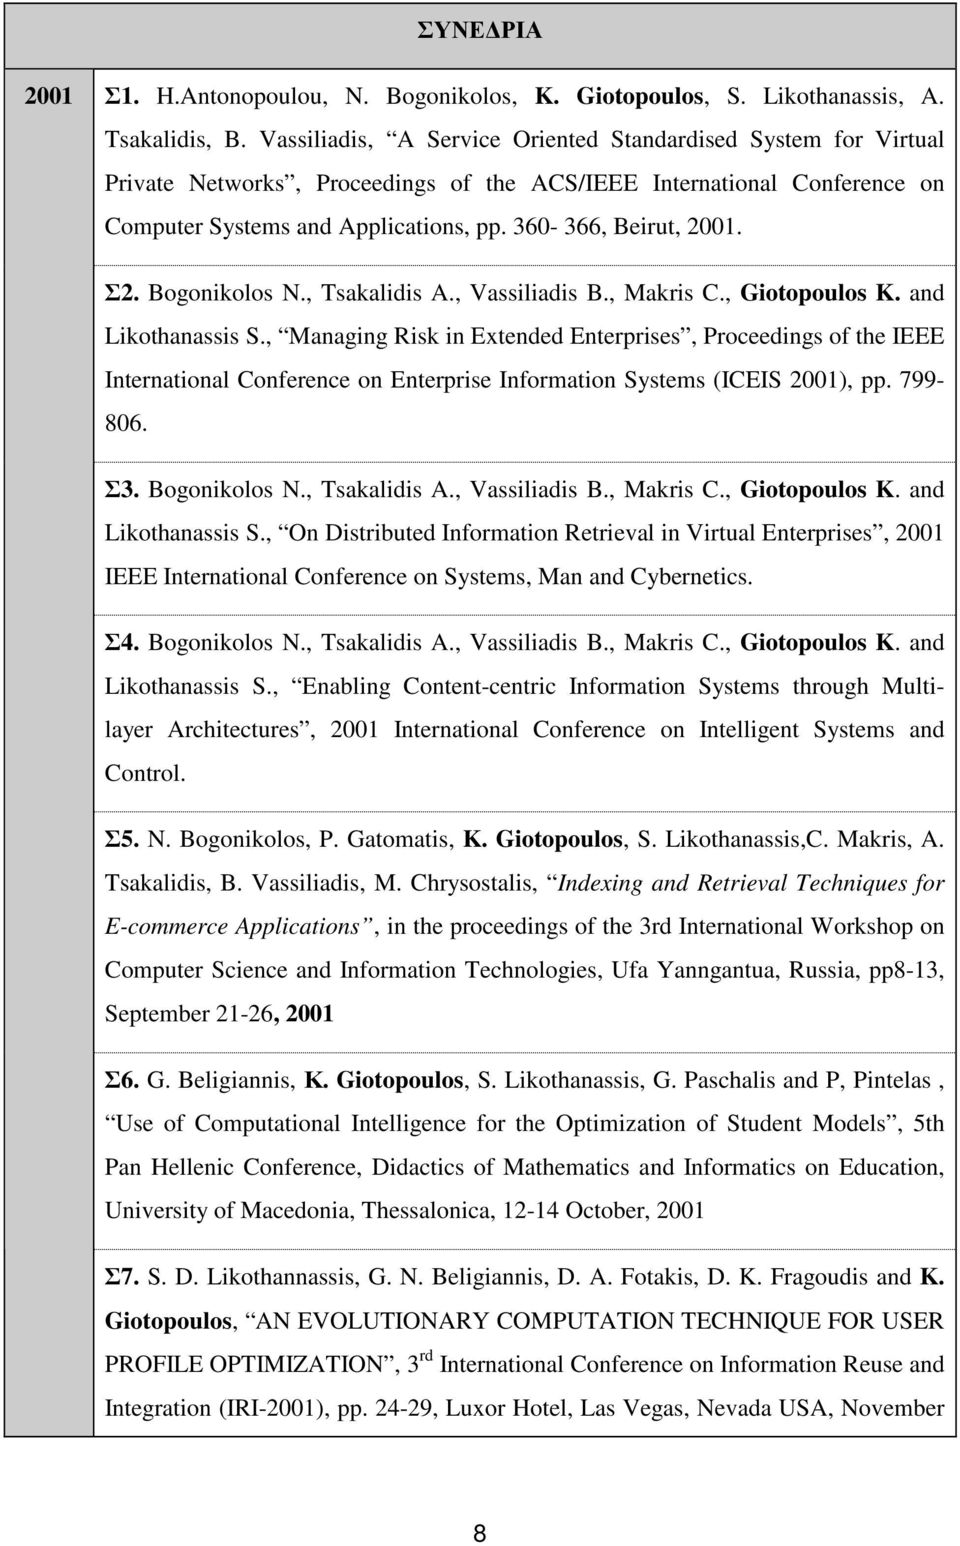 Σ2. Bogonikolos N., Tsakalidis A., Vassiliadis B., Makris C., Giotopoulos K. and Likothanassis S.